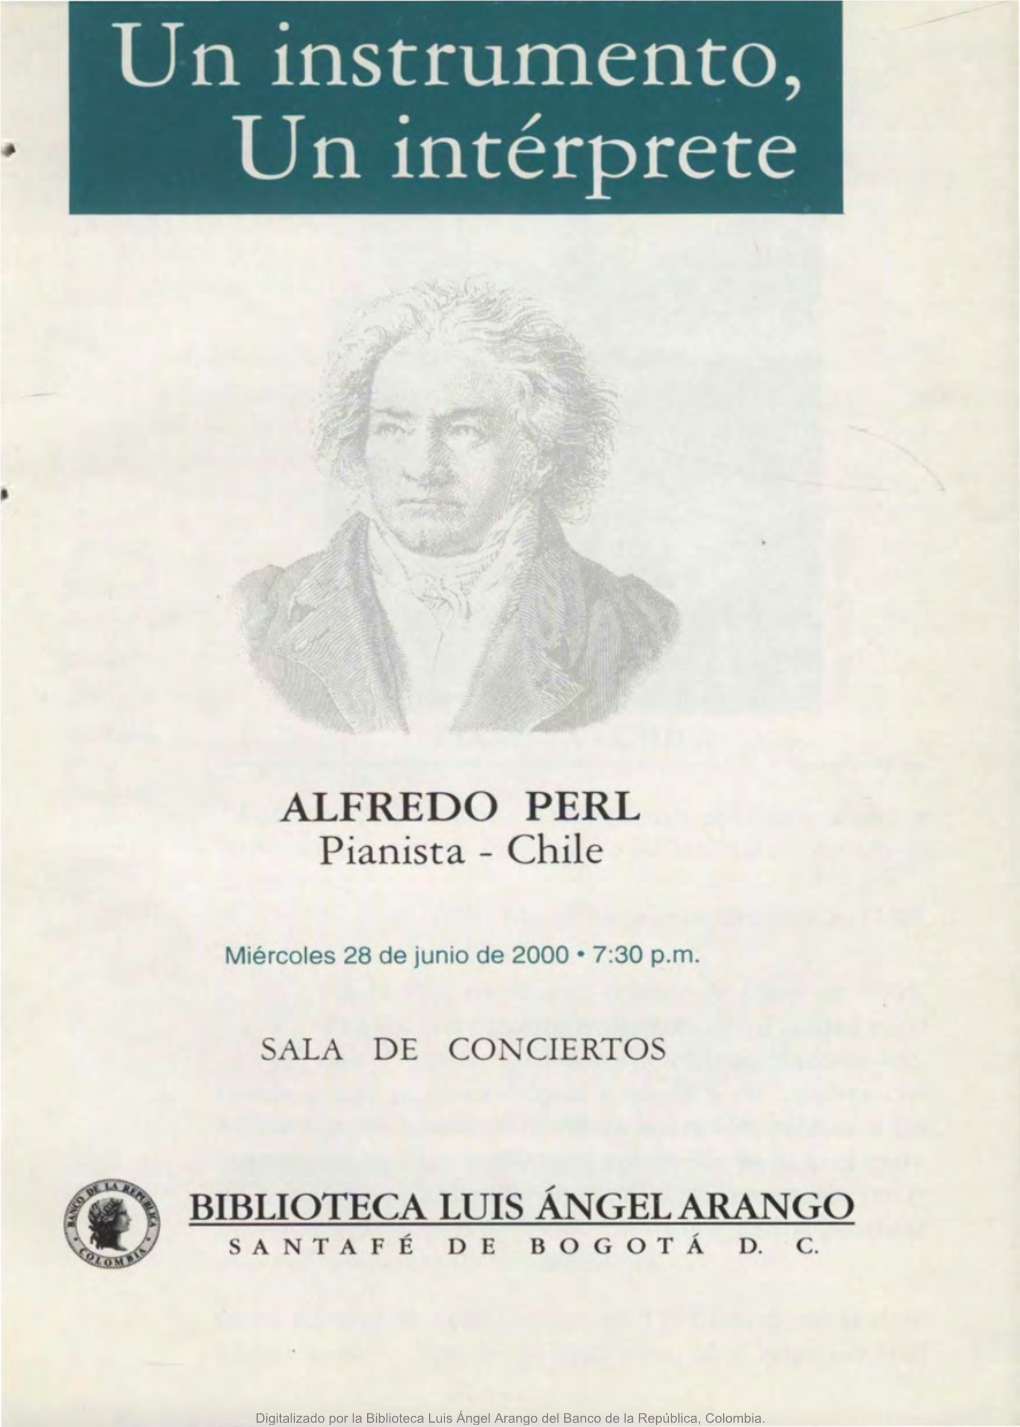 ALFREDO PERL Pianista - Chile